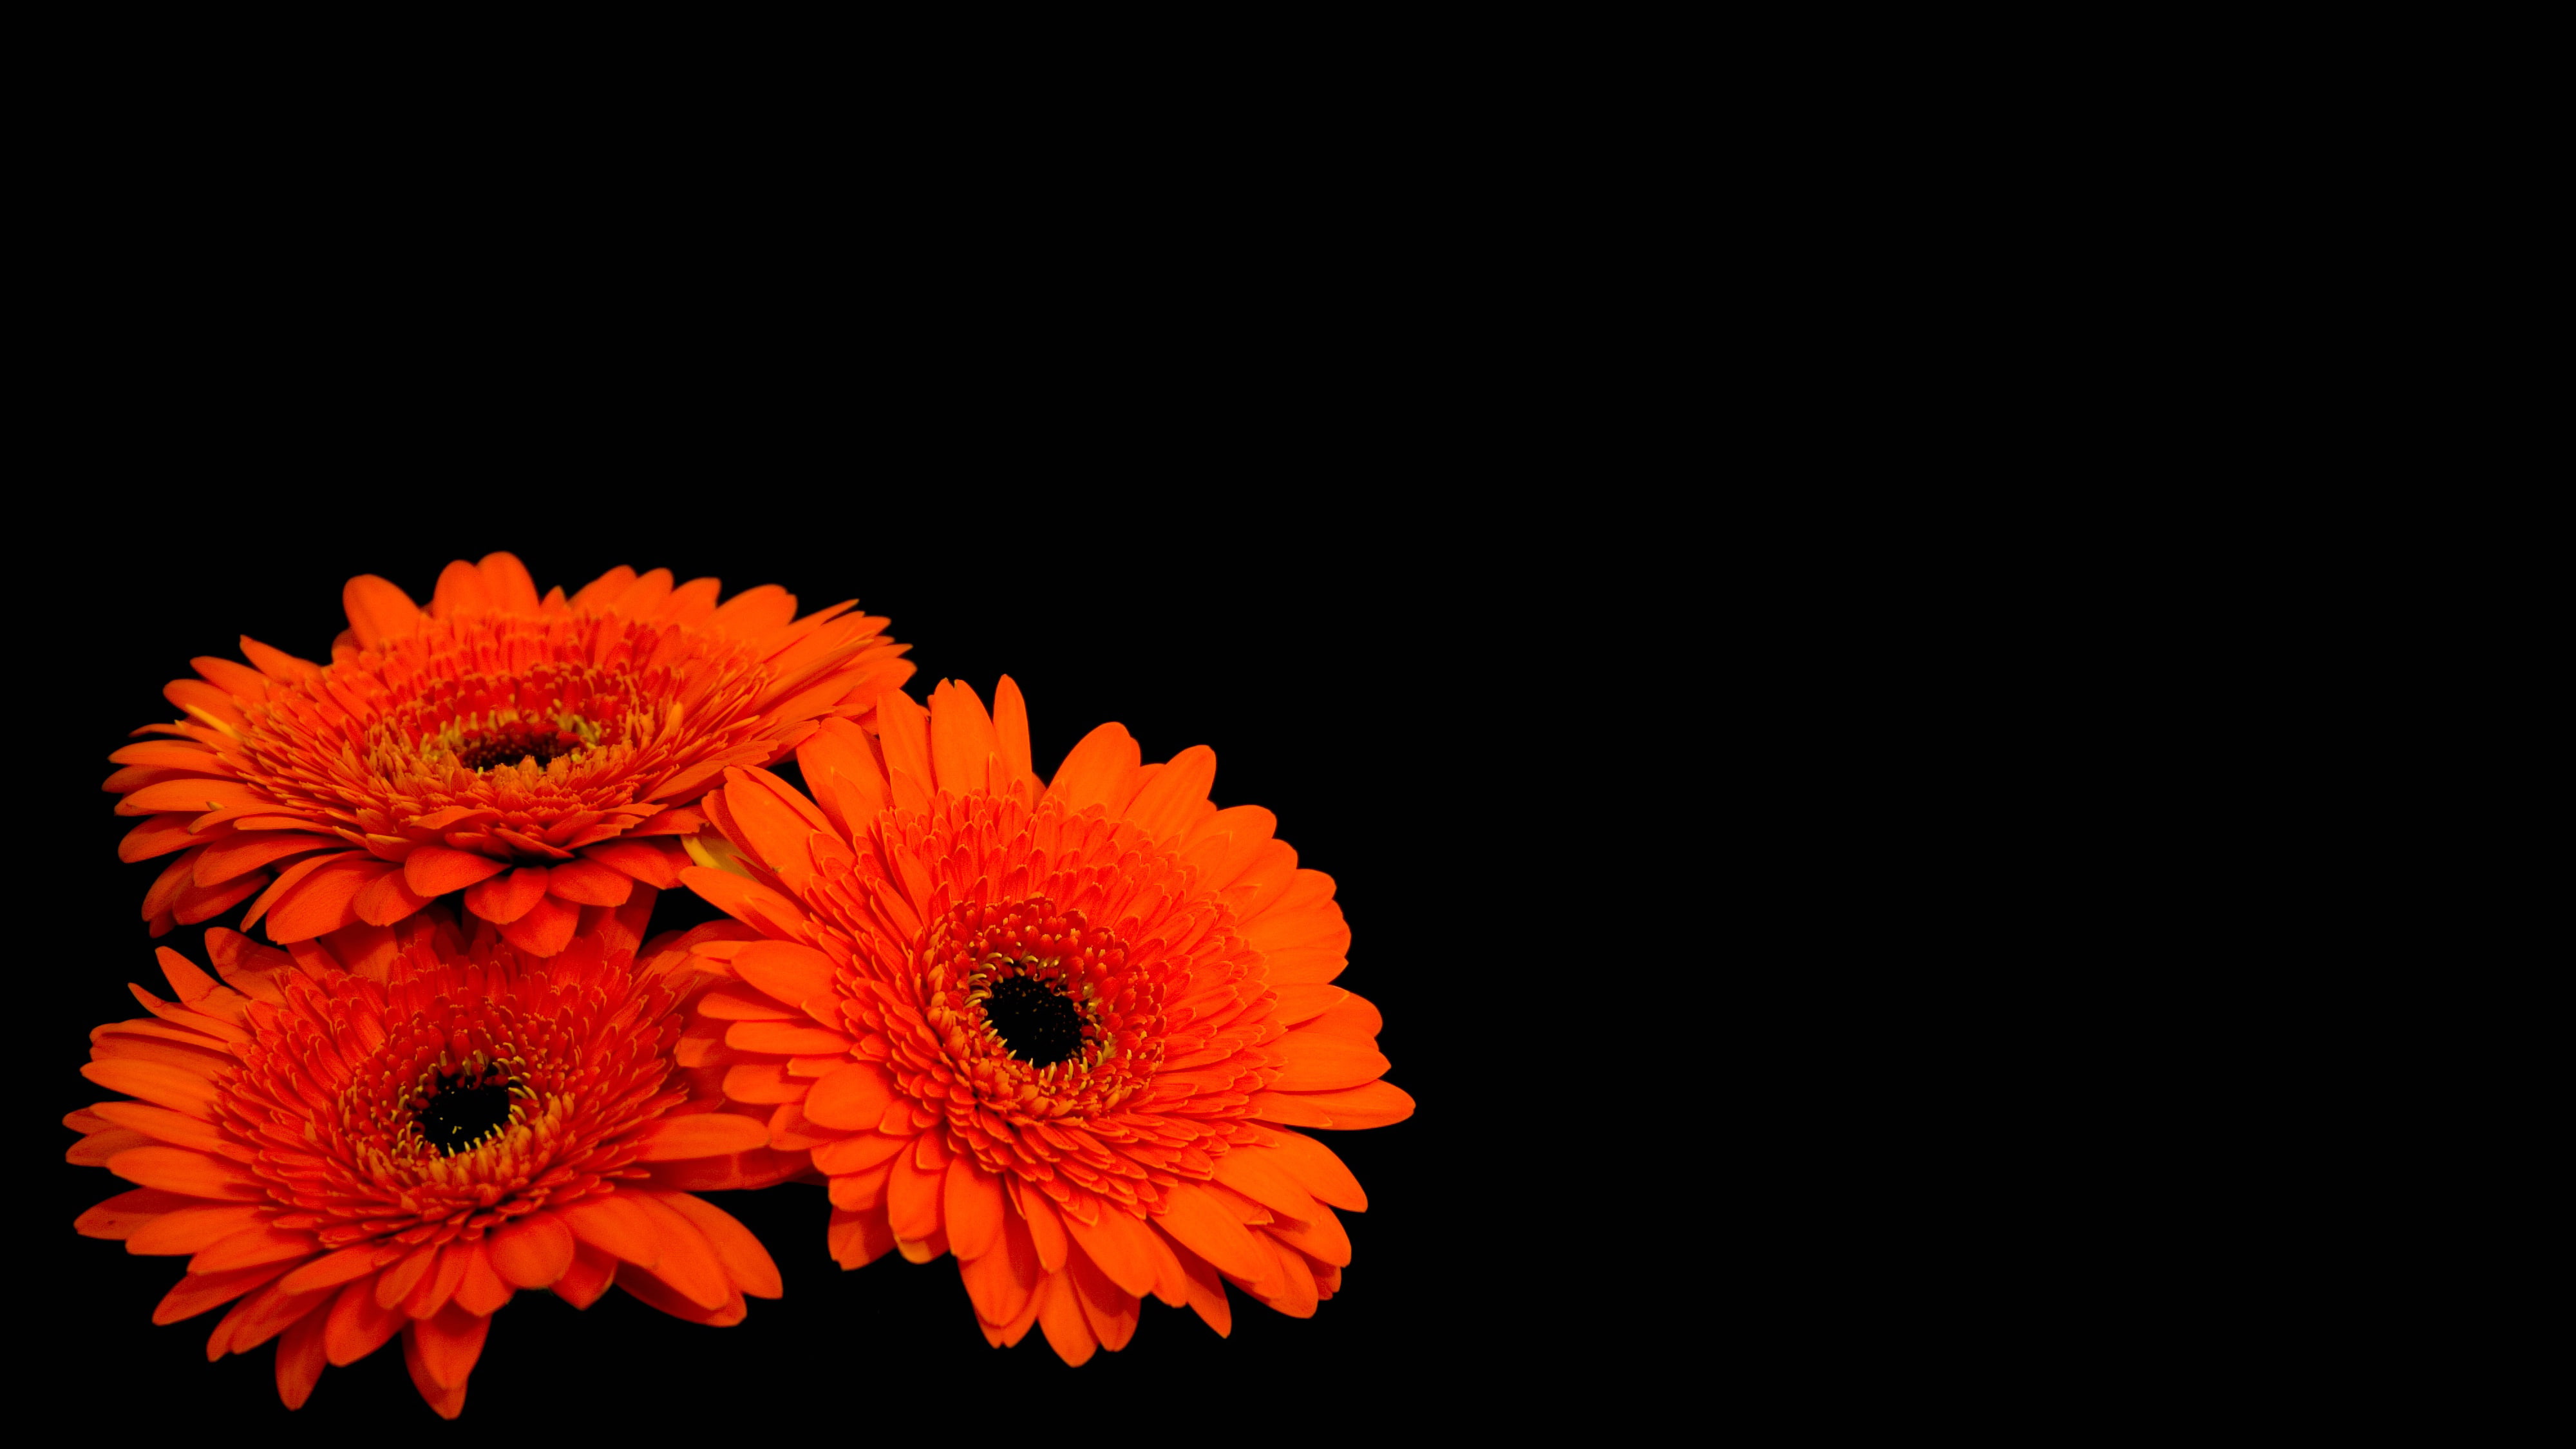 Dark background, Gerbera flowers, 4K, Orange Gerber Daisies